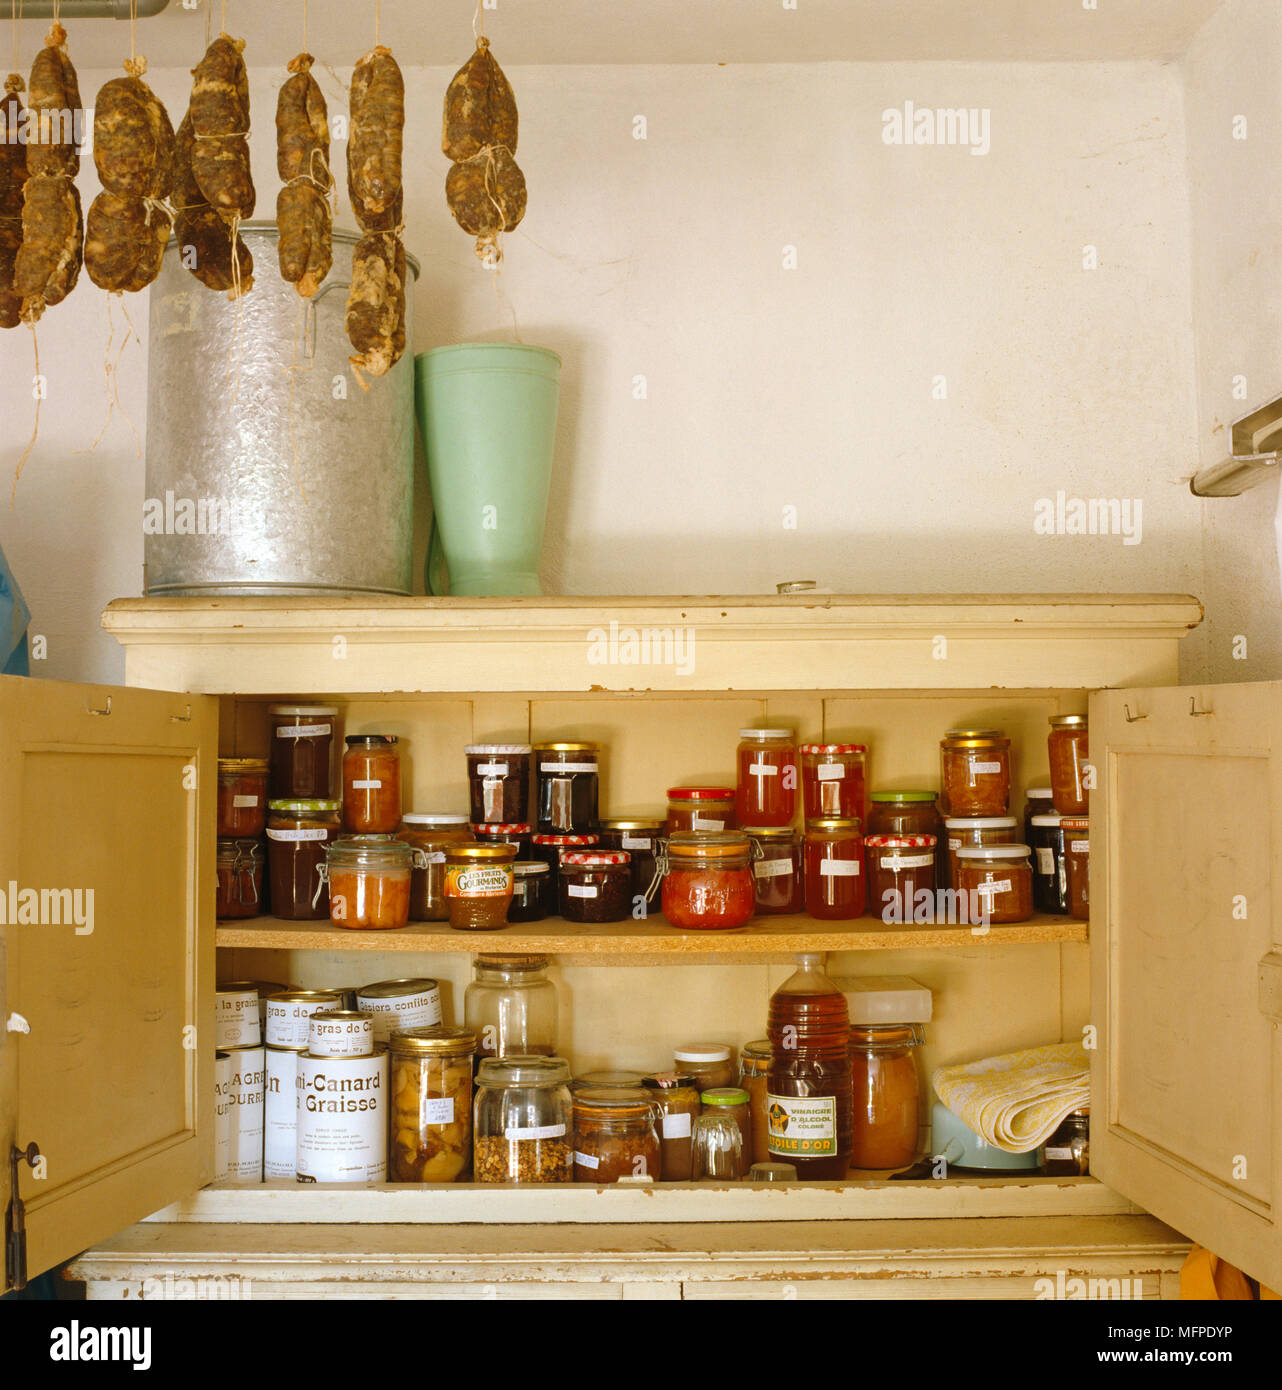 Essen Schrank mit Gläsern von Konserven und Dosen gefüllt Stockfotografie -  Alamy